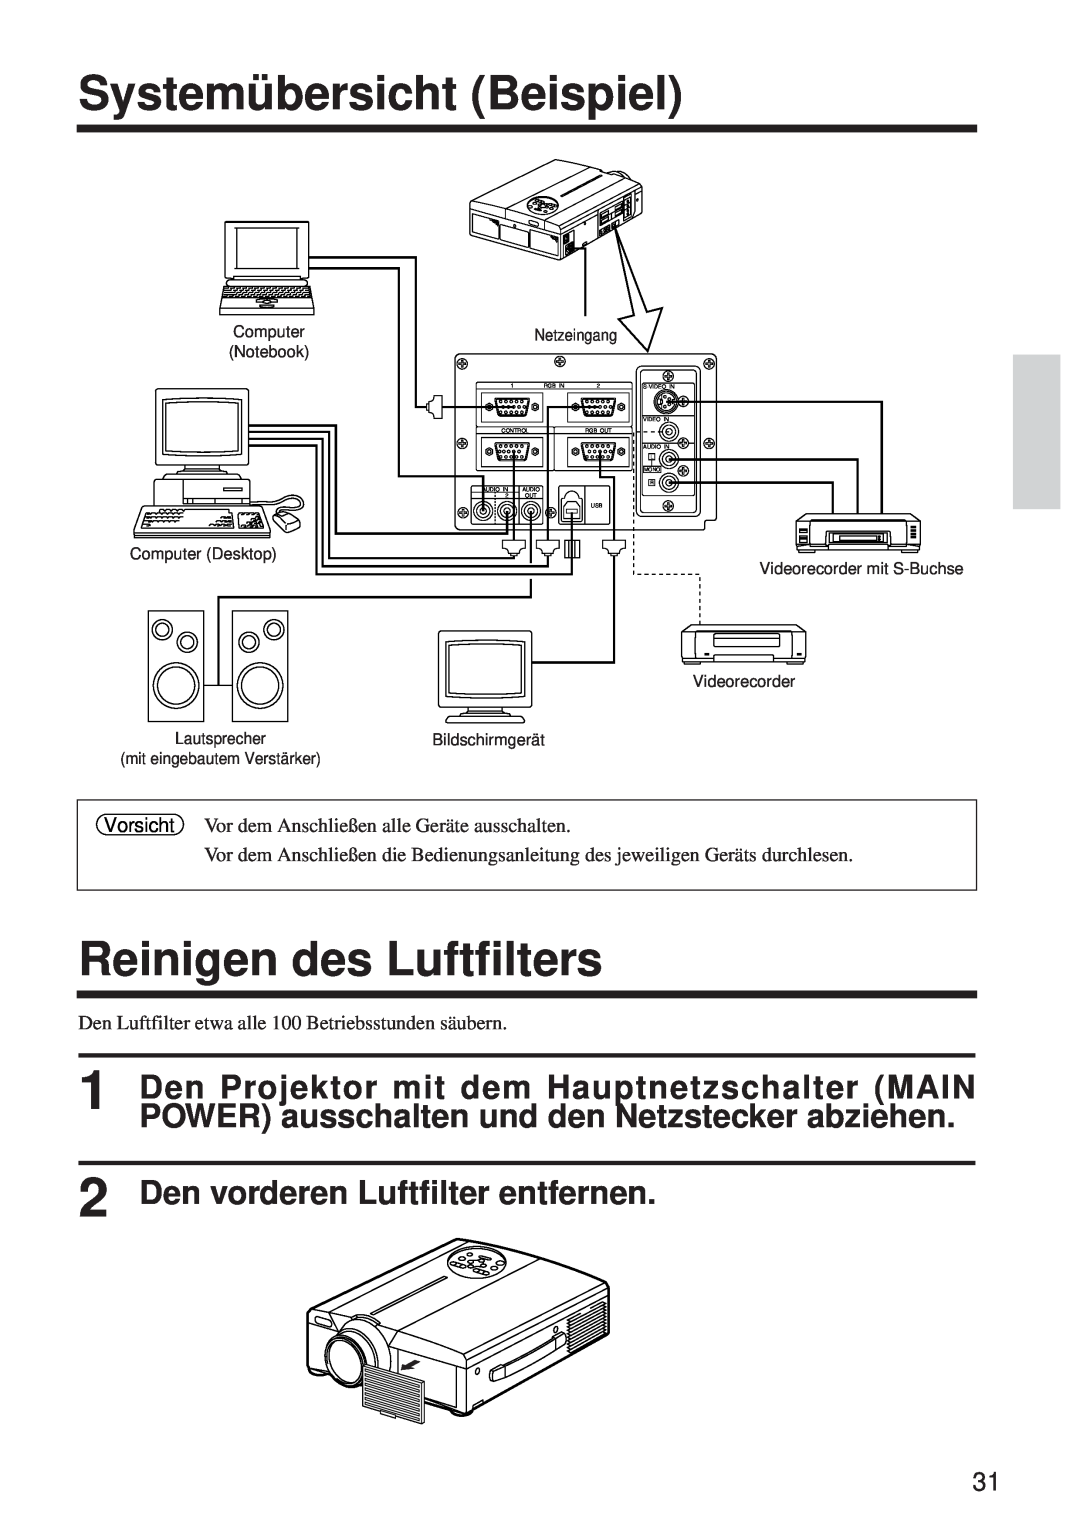 BOXLIGHT MP-650i user manual Systemübersicht Beispiel, Reinigen des Luftfilters, Den vorderen Luftfilter entfernen 